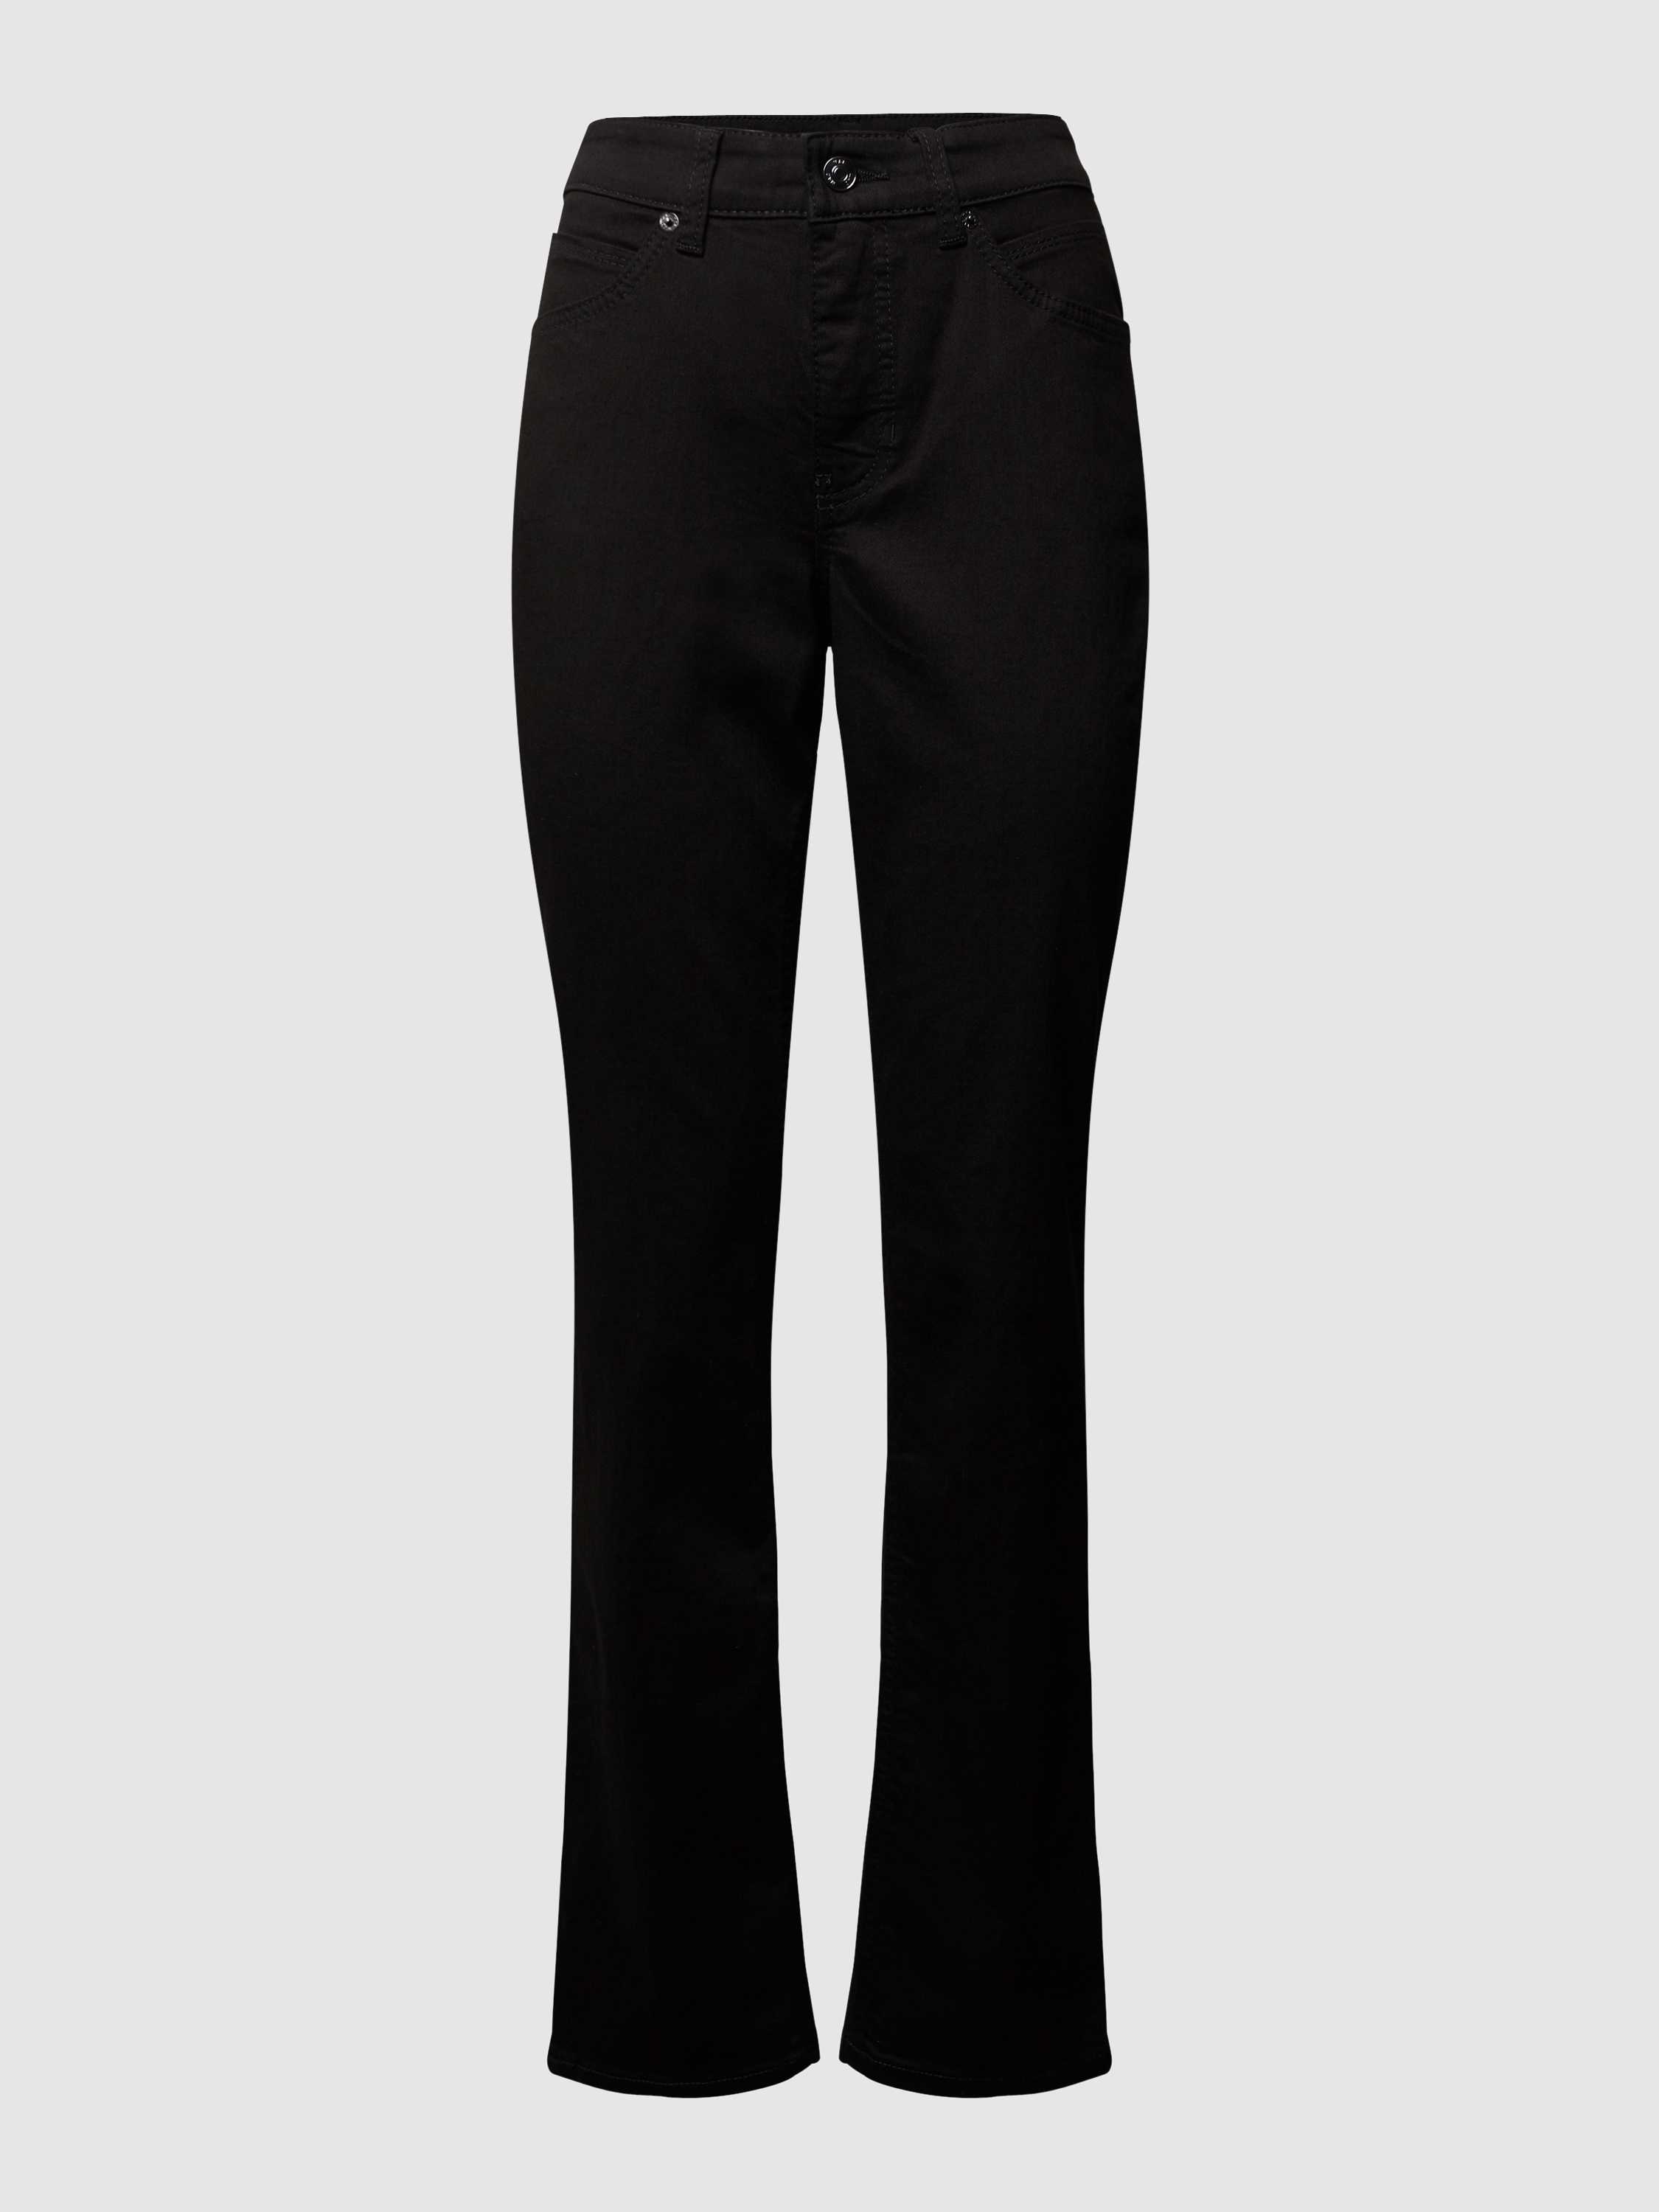 Feminine Fit 5-Pocket-Jeans Modell MELANIE, Peek & Cloppenburg